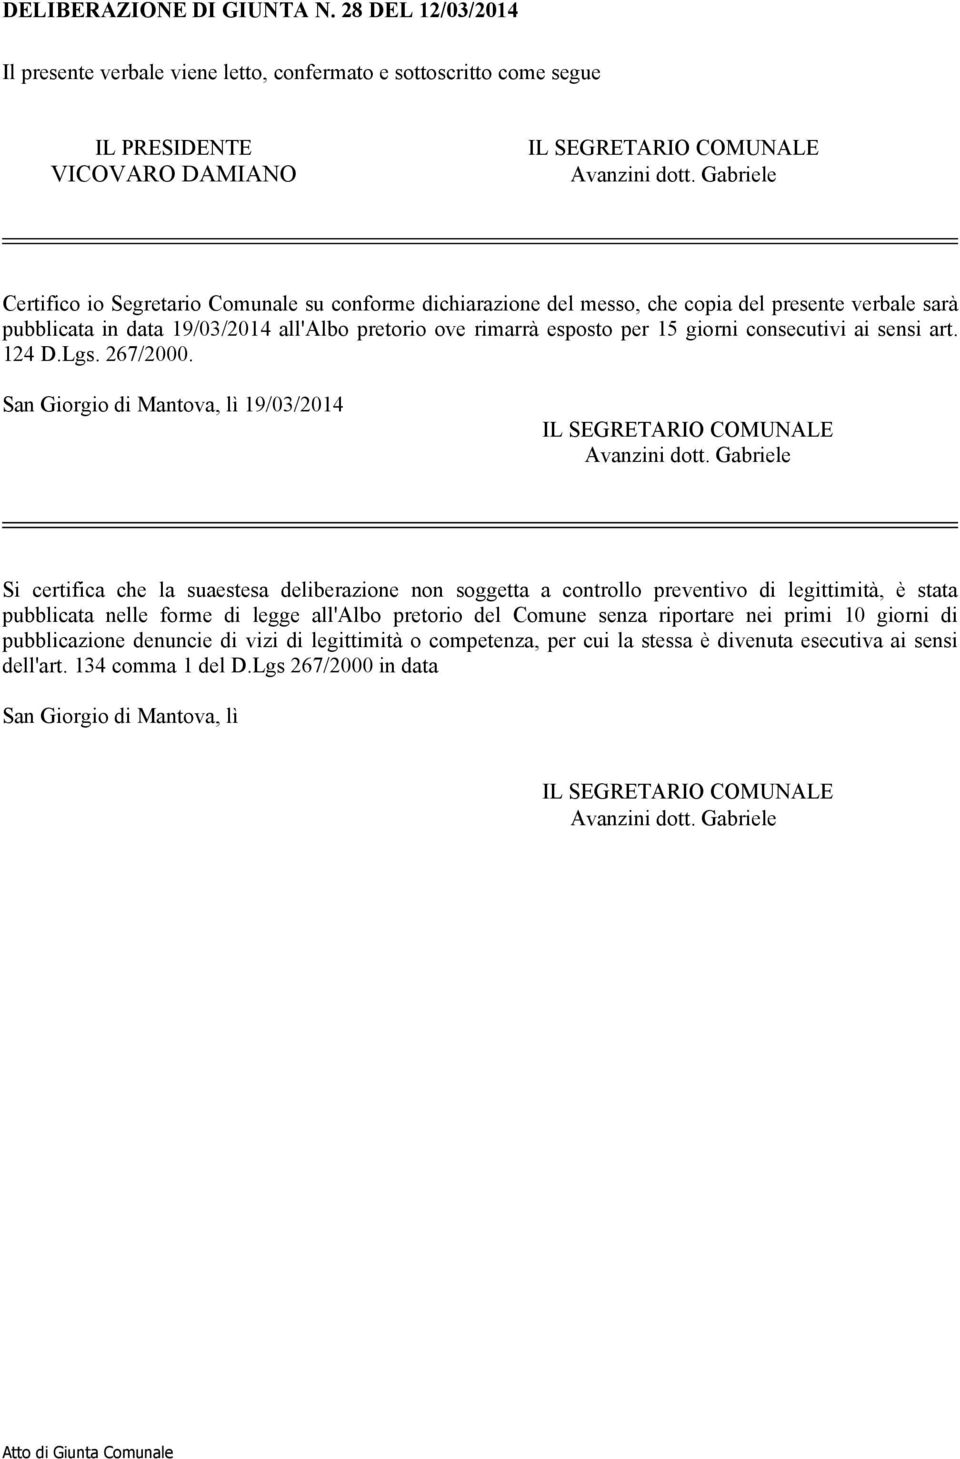 consecutivi ai sensi art. 124 D.Lgs. 267/2000. San Giorgio di Mantova, lì 19/03/2014 IL SEGRETARIO COMUNALE Avanzini dott.